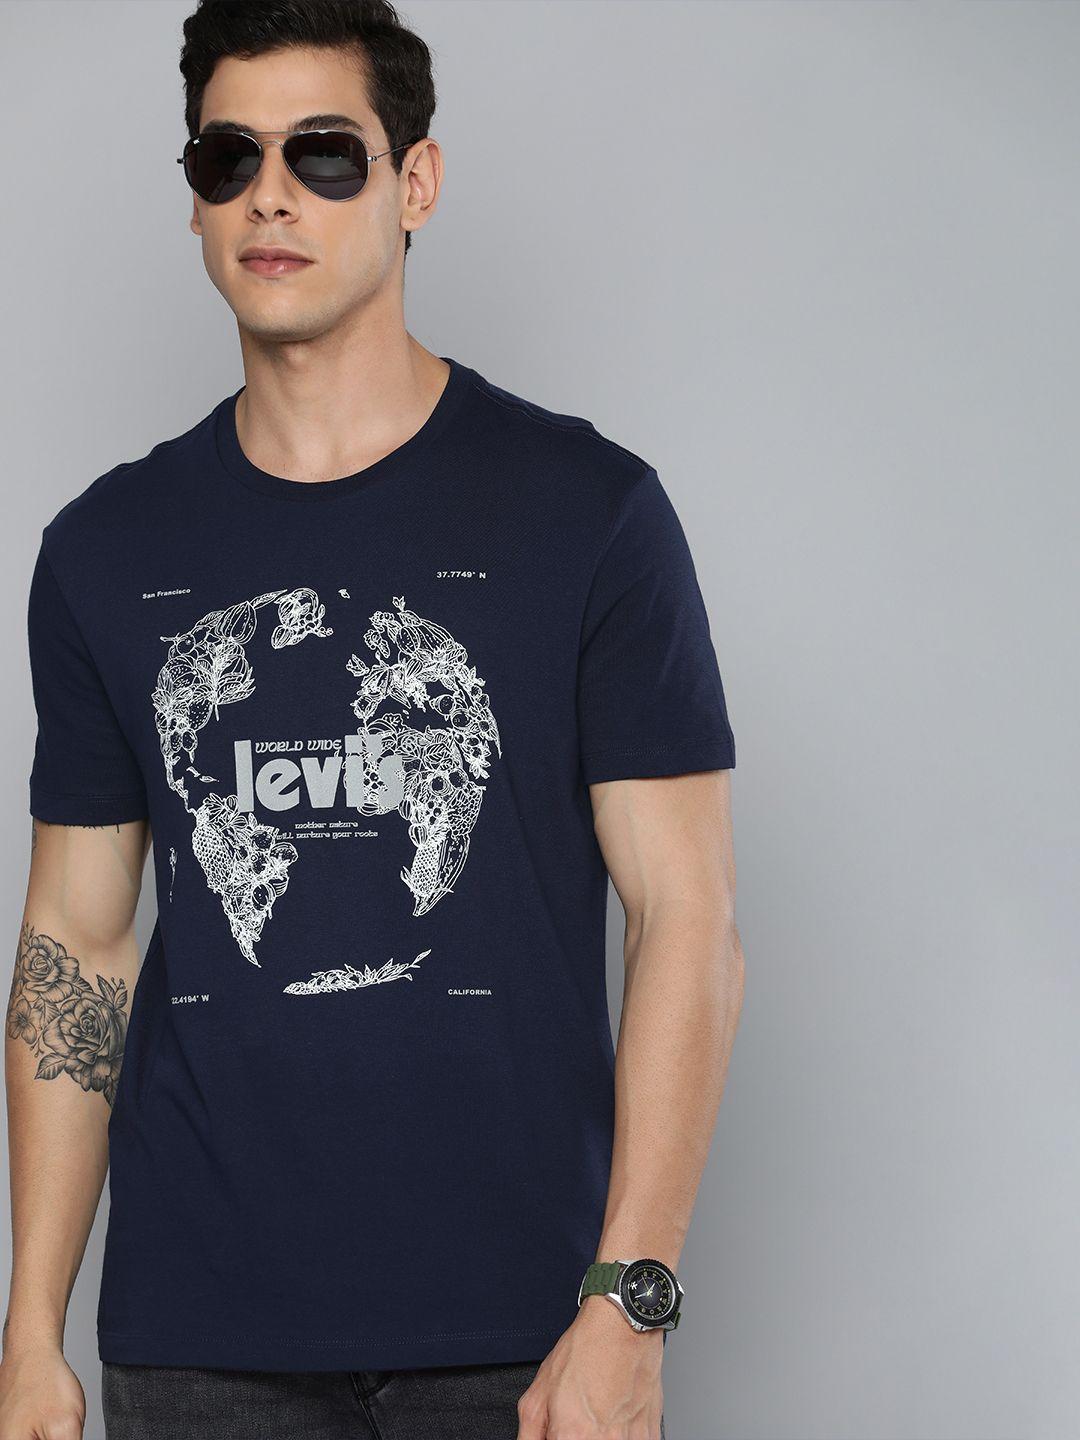 levis men navy blue & white printed pure cotton t-shirt